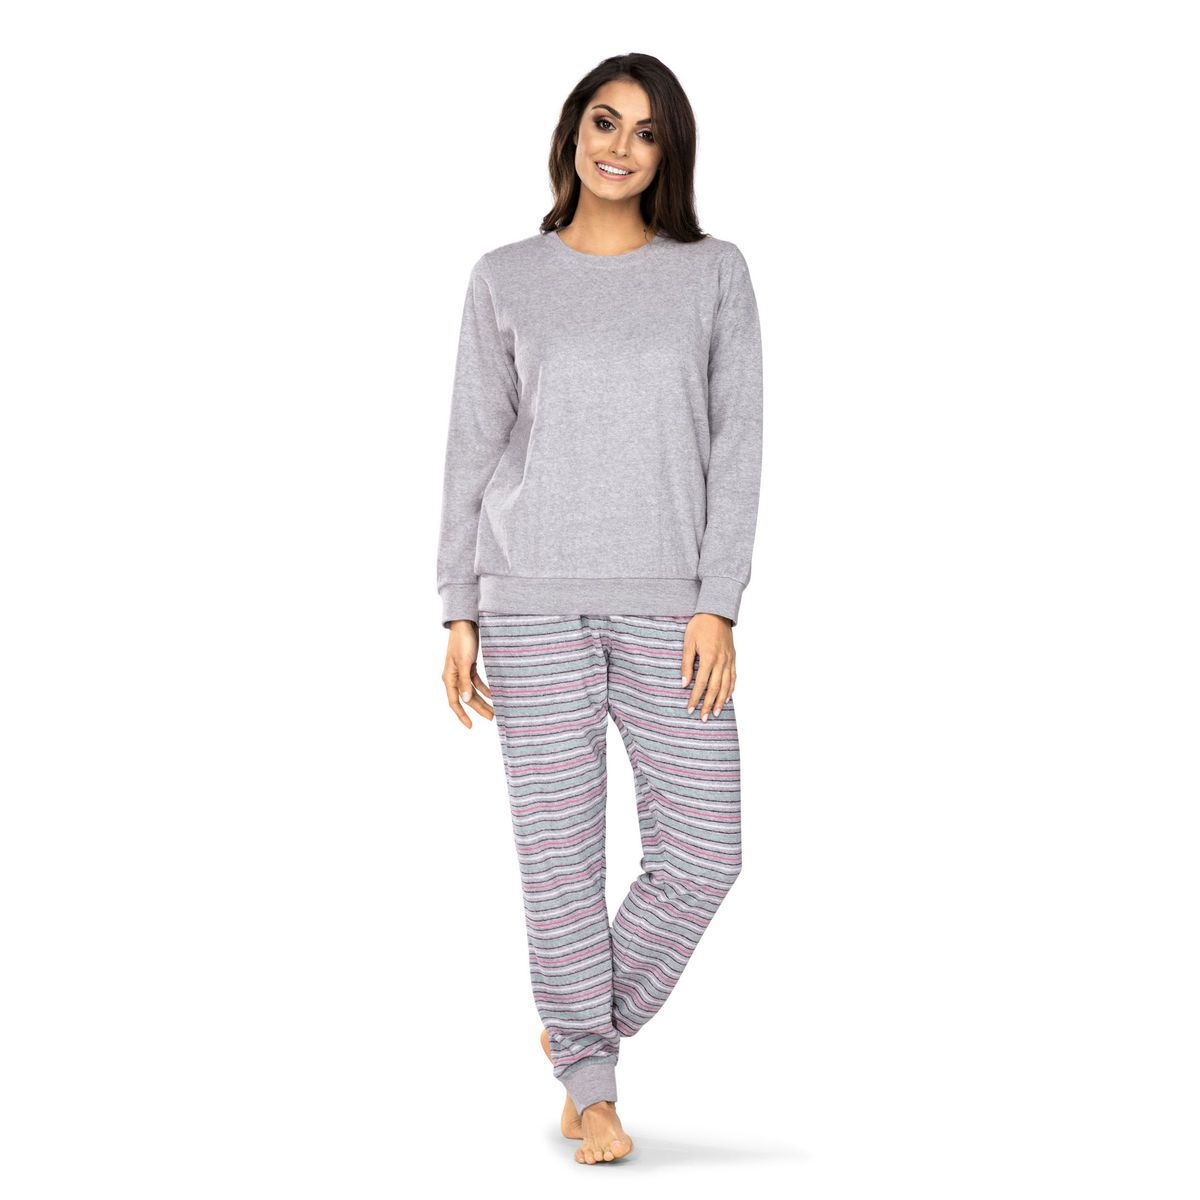 Allergie borduurwerk staan Dames badstof pyjama grijs | Gratis verzending | Online de mooiste  pyjama's, nachthemden, ondermode en meer